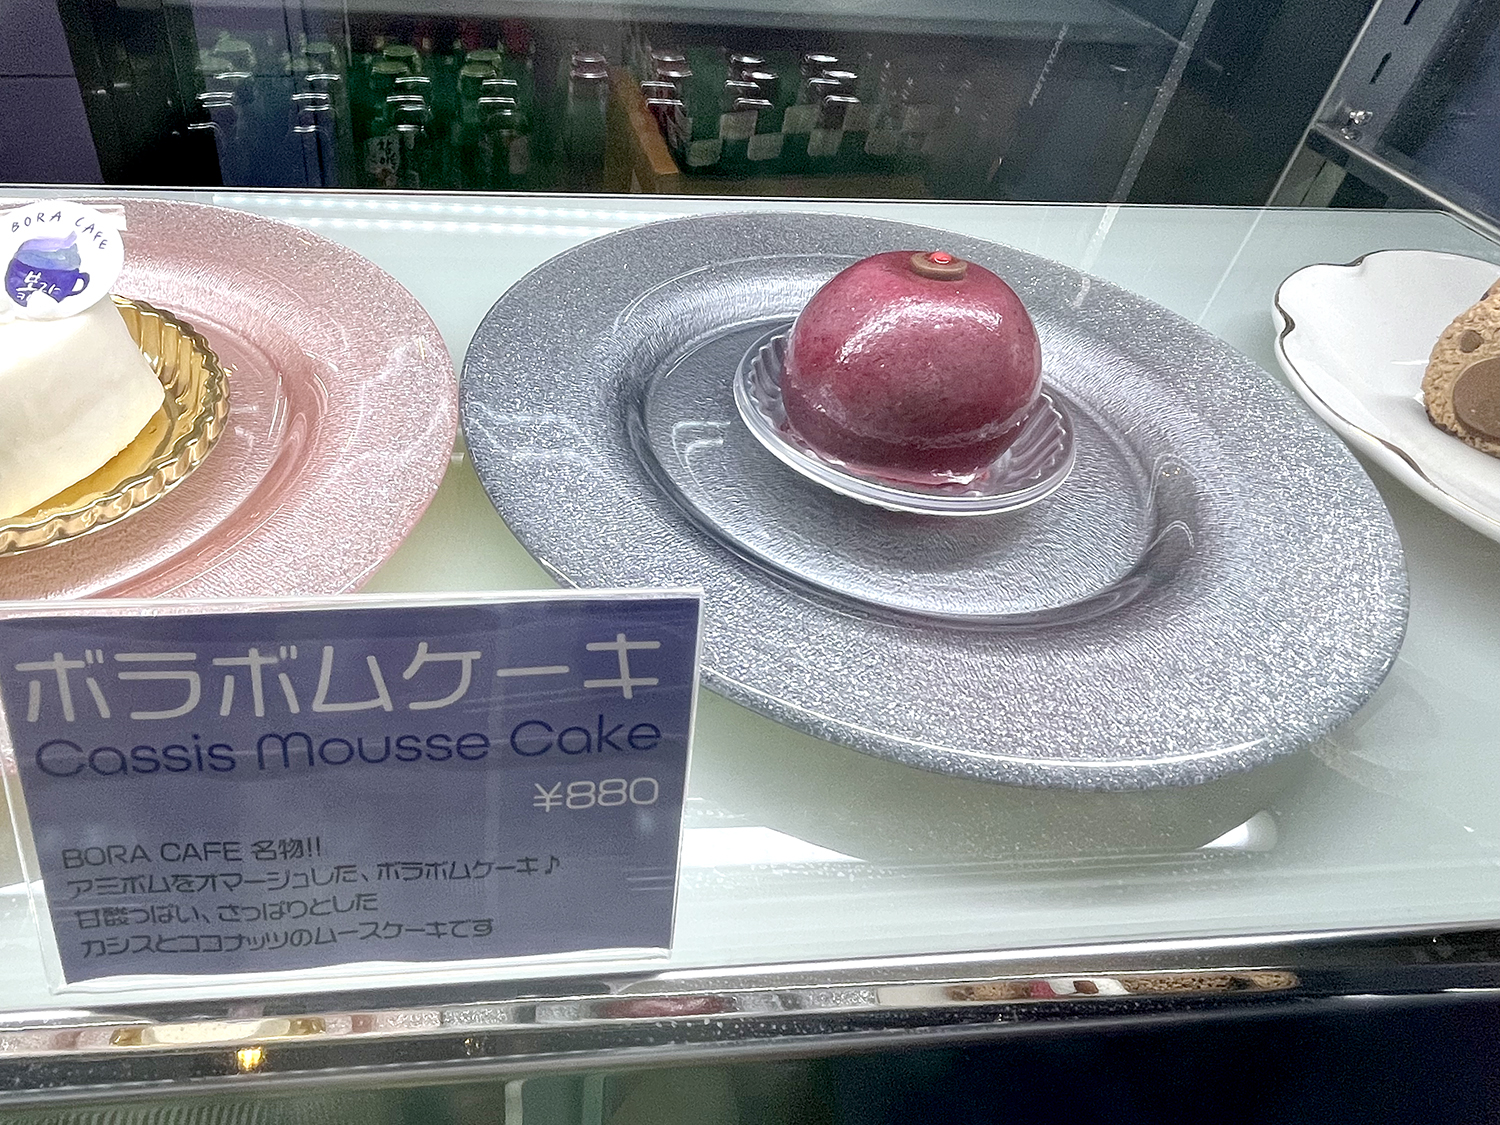 BTS公式ペンライト・アミボムをオマージュしたボラボムケーキ880円はこの店の名物のひとつ。カシスとココナッツのムースだ。